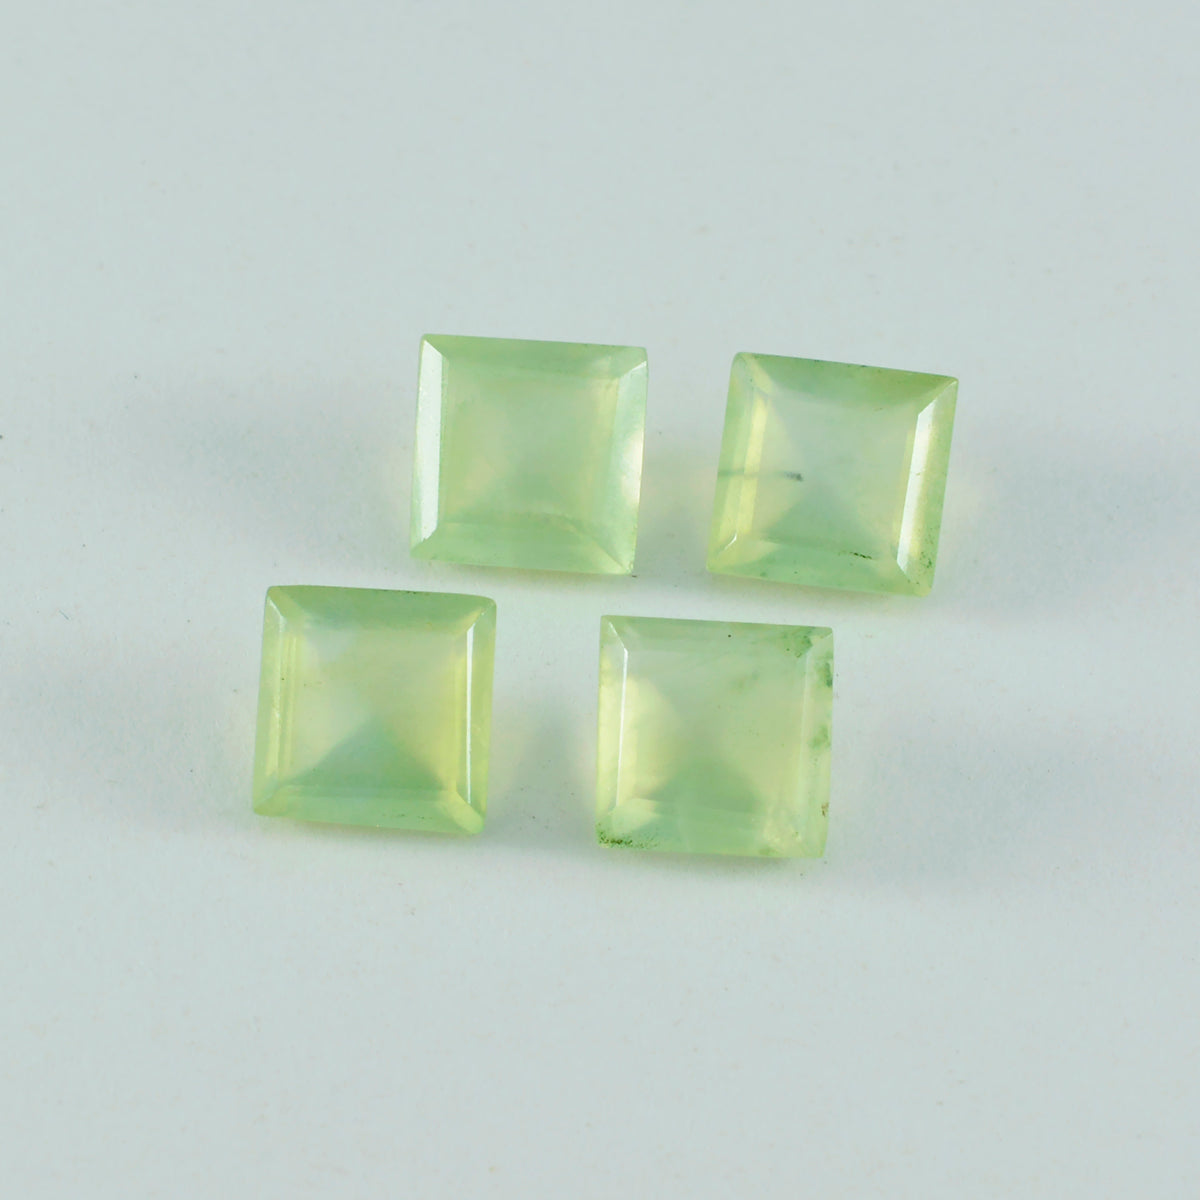 Riyogems 1 Stück grüner Prehnit, facettiert, 10 x 10 mm, quadratische Form, hübscher, hochwertiger loser Stein